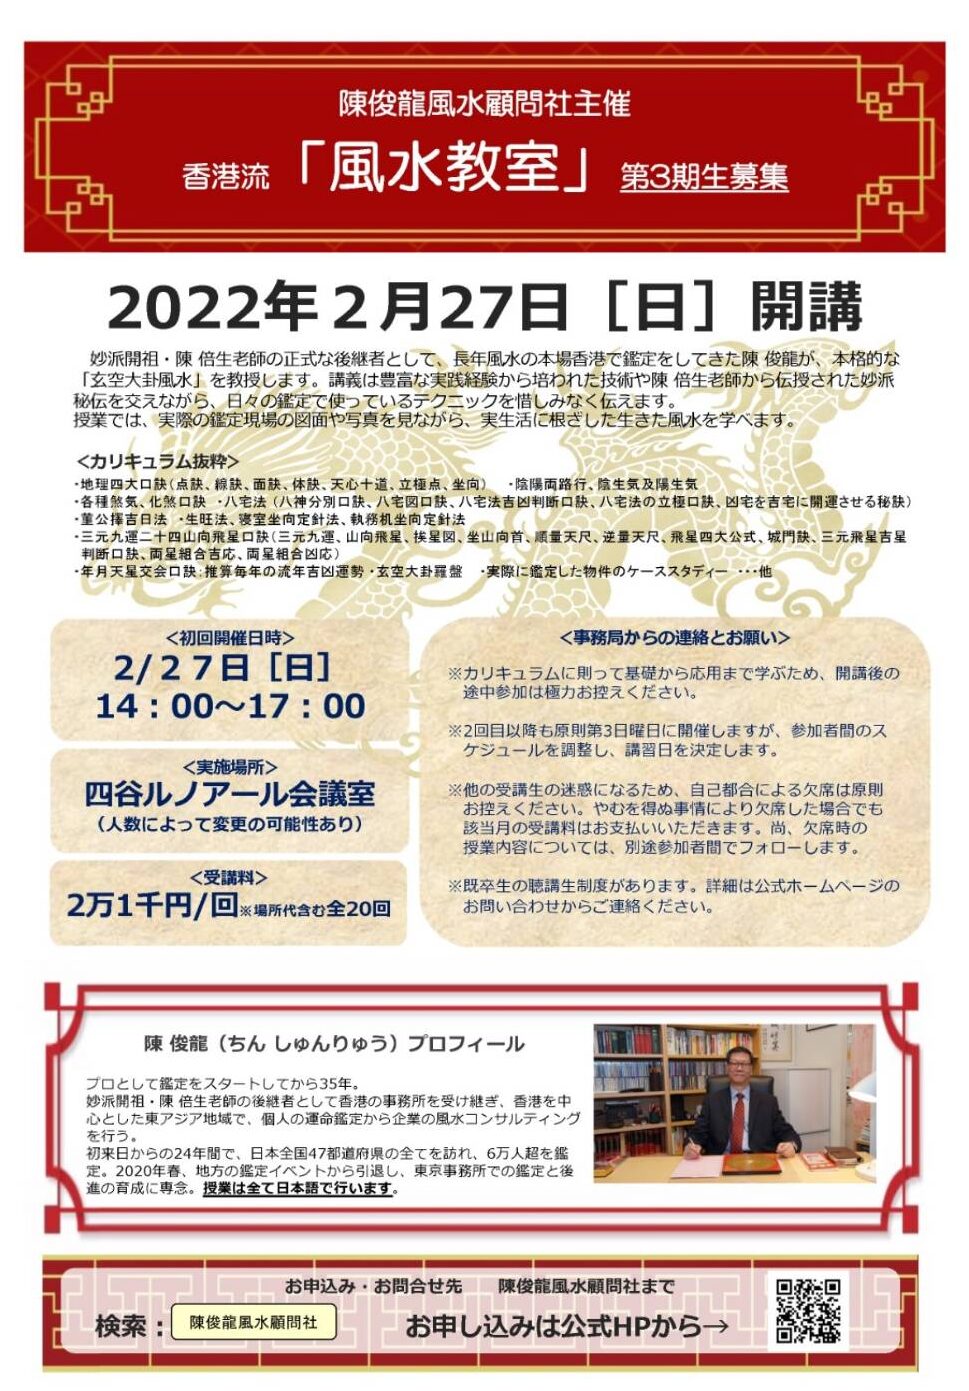 陳俊龍先生の風水講座 2022年開講